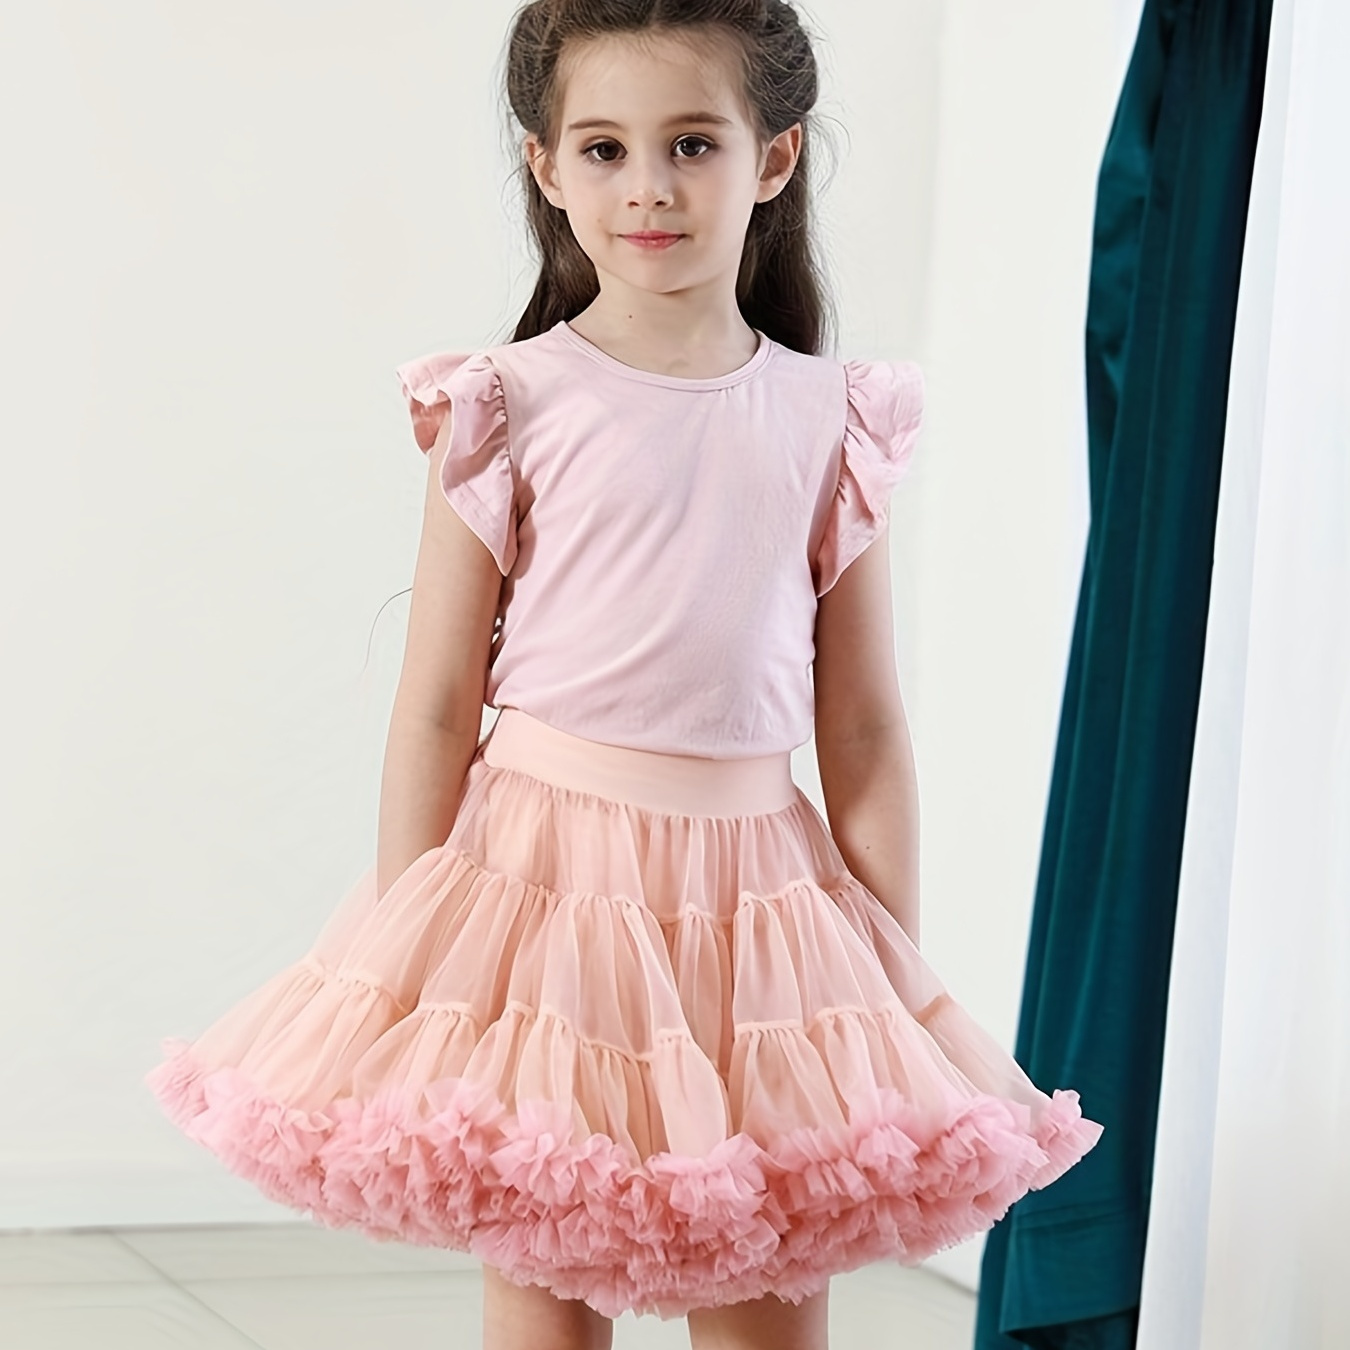 Tutu jupe pour les filles, violet Mesh Tutu jupe pour les filles princesse  robe de danse Ballet Tutu jupe pour les jeunes enfants 2-5 ans : :  Mode